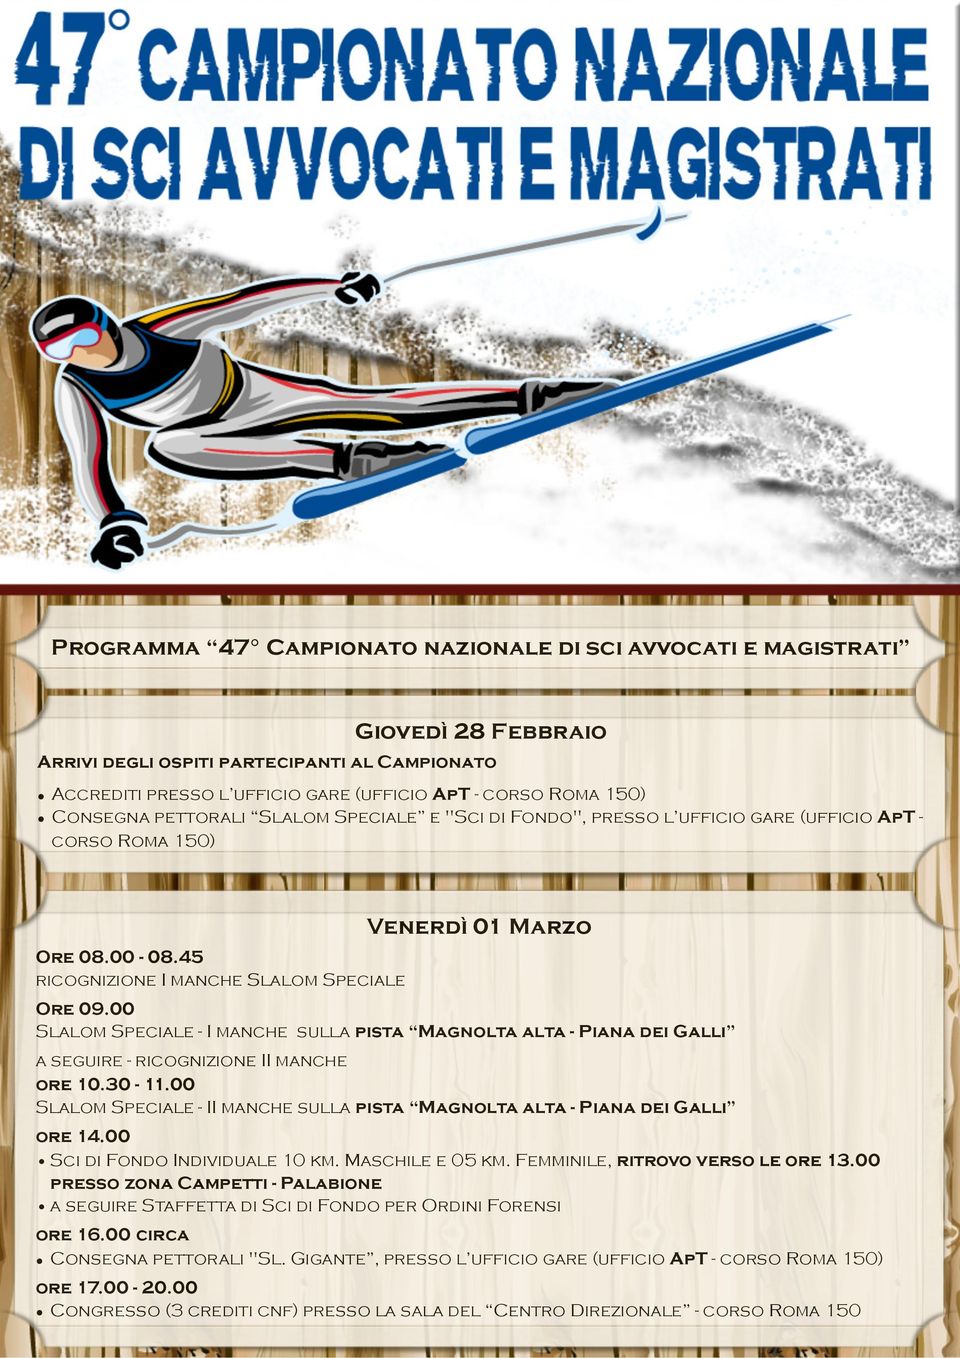 00 Slalom Speciale - I manche sulla pista Magnolta alta - Piana dei Galli a seguire - ricognizione II manche ore 10.30-11.